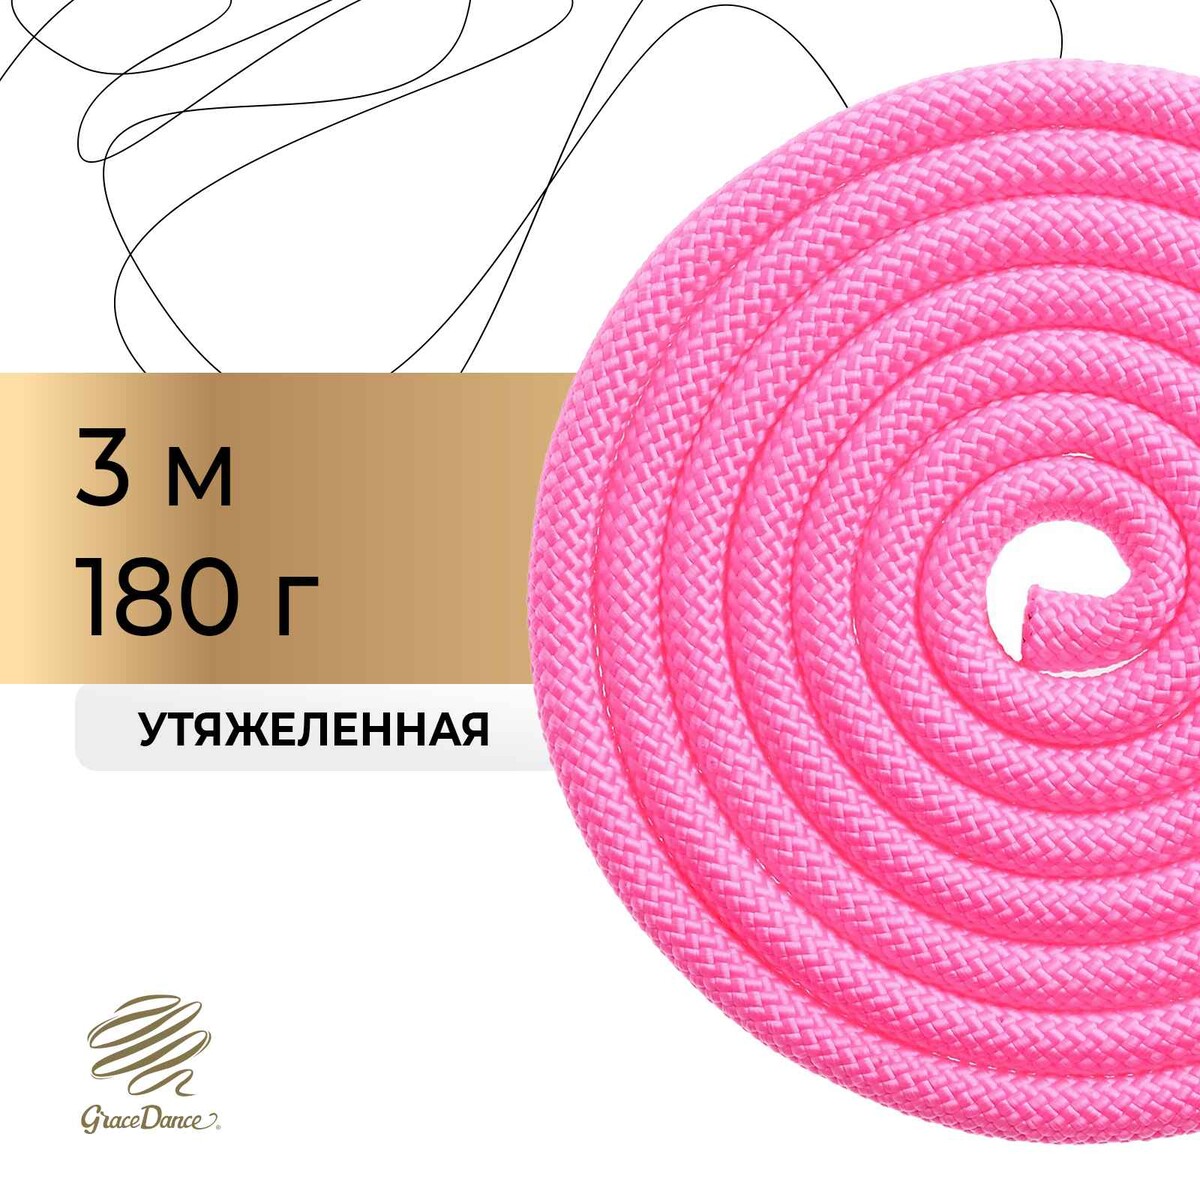 Скакалка для художественной гимнастики утяжеленная grace dance, 3 м, цвет розовый скакалка гимнастическая с люрексом body form bf sk03 bf jrgl01 2 5м 150гр розовый